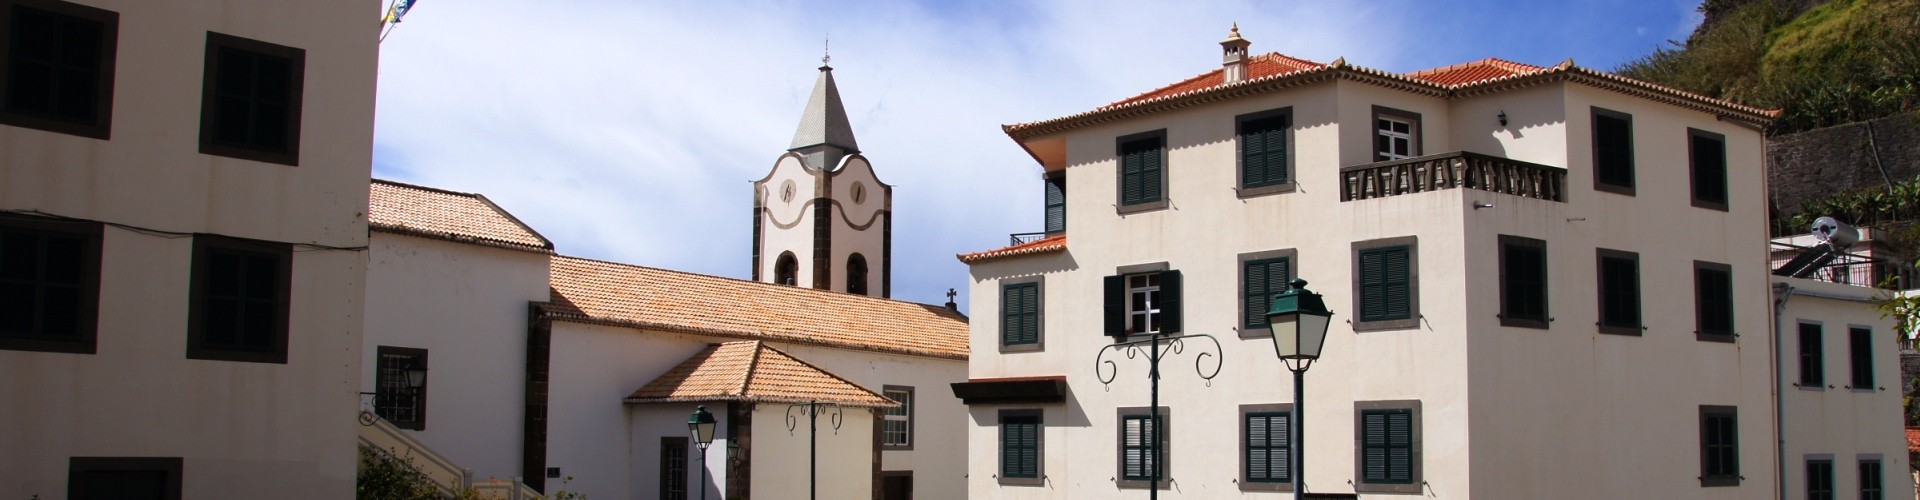 Nossa Senhora da Luz Ponta do Sol Parish Church, Madeira